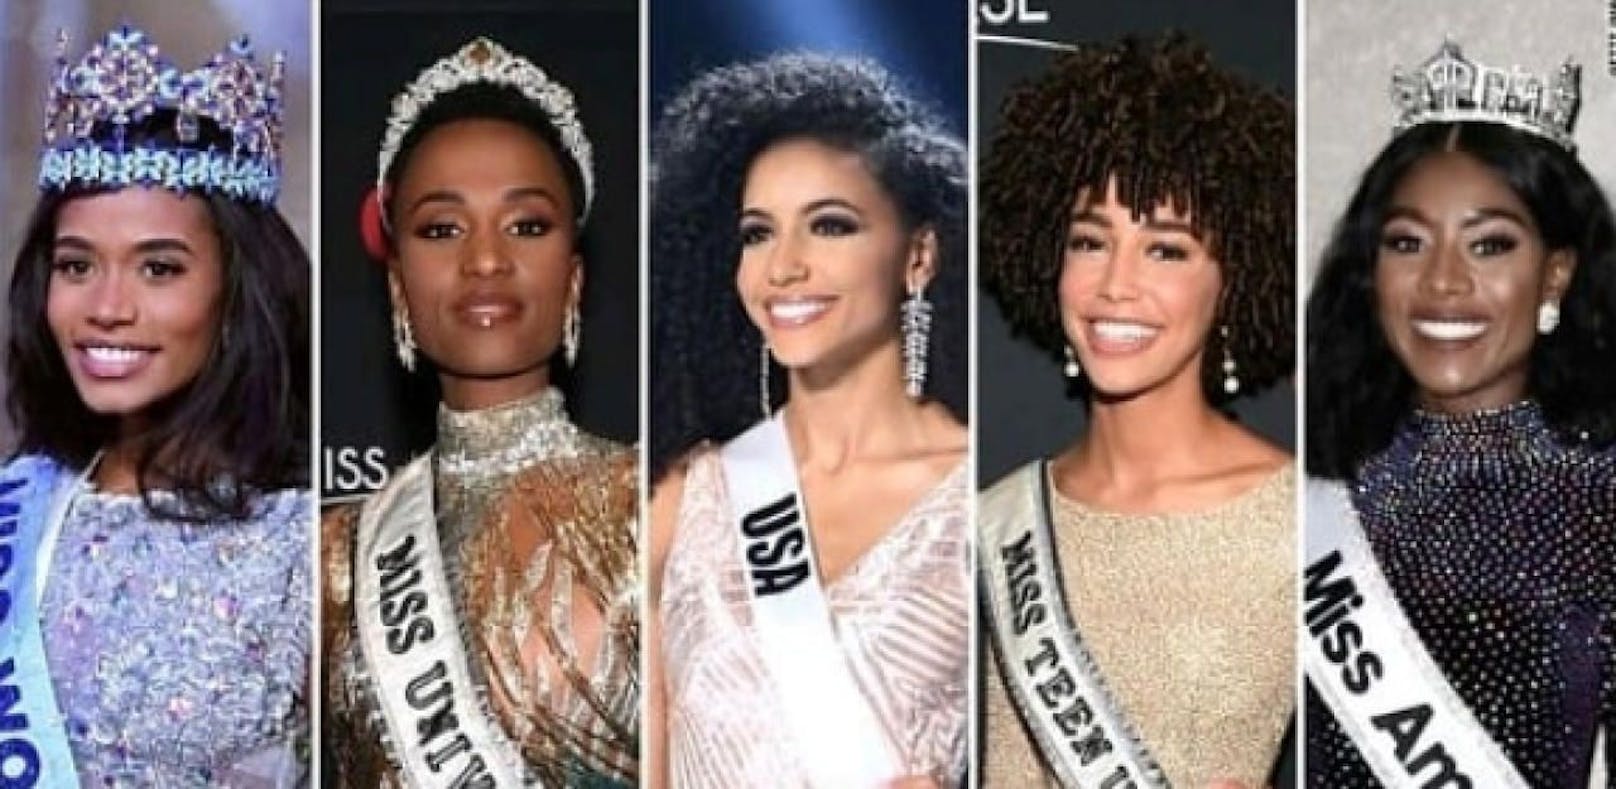 Die fünf schönsten Frauen haben dunkle Hautfarbe